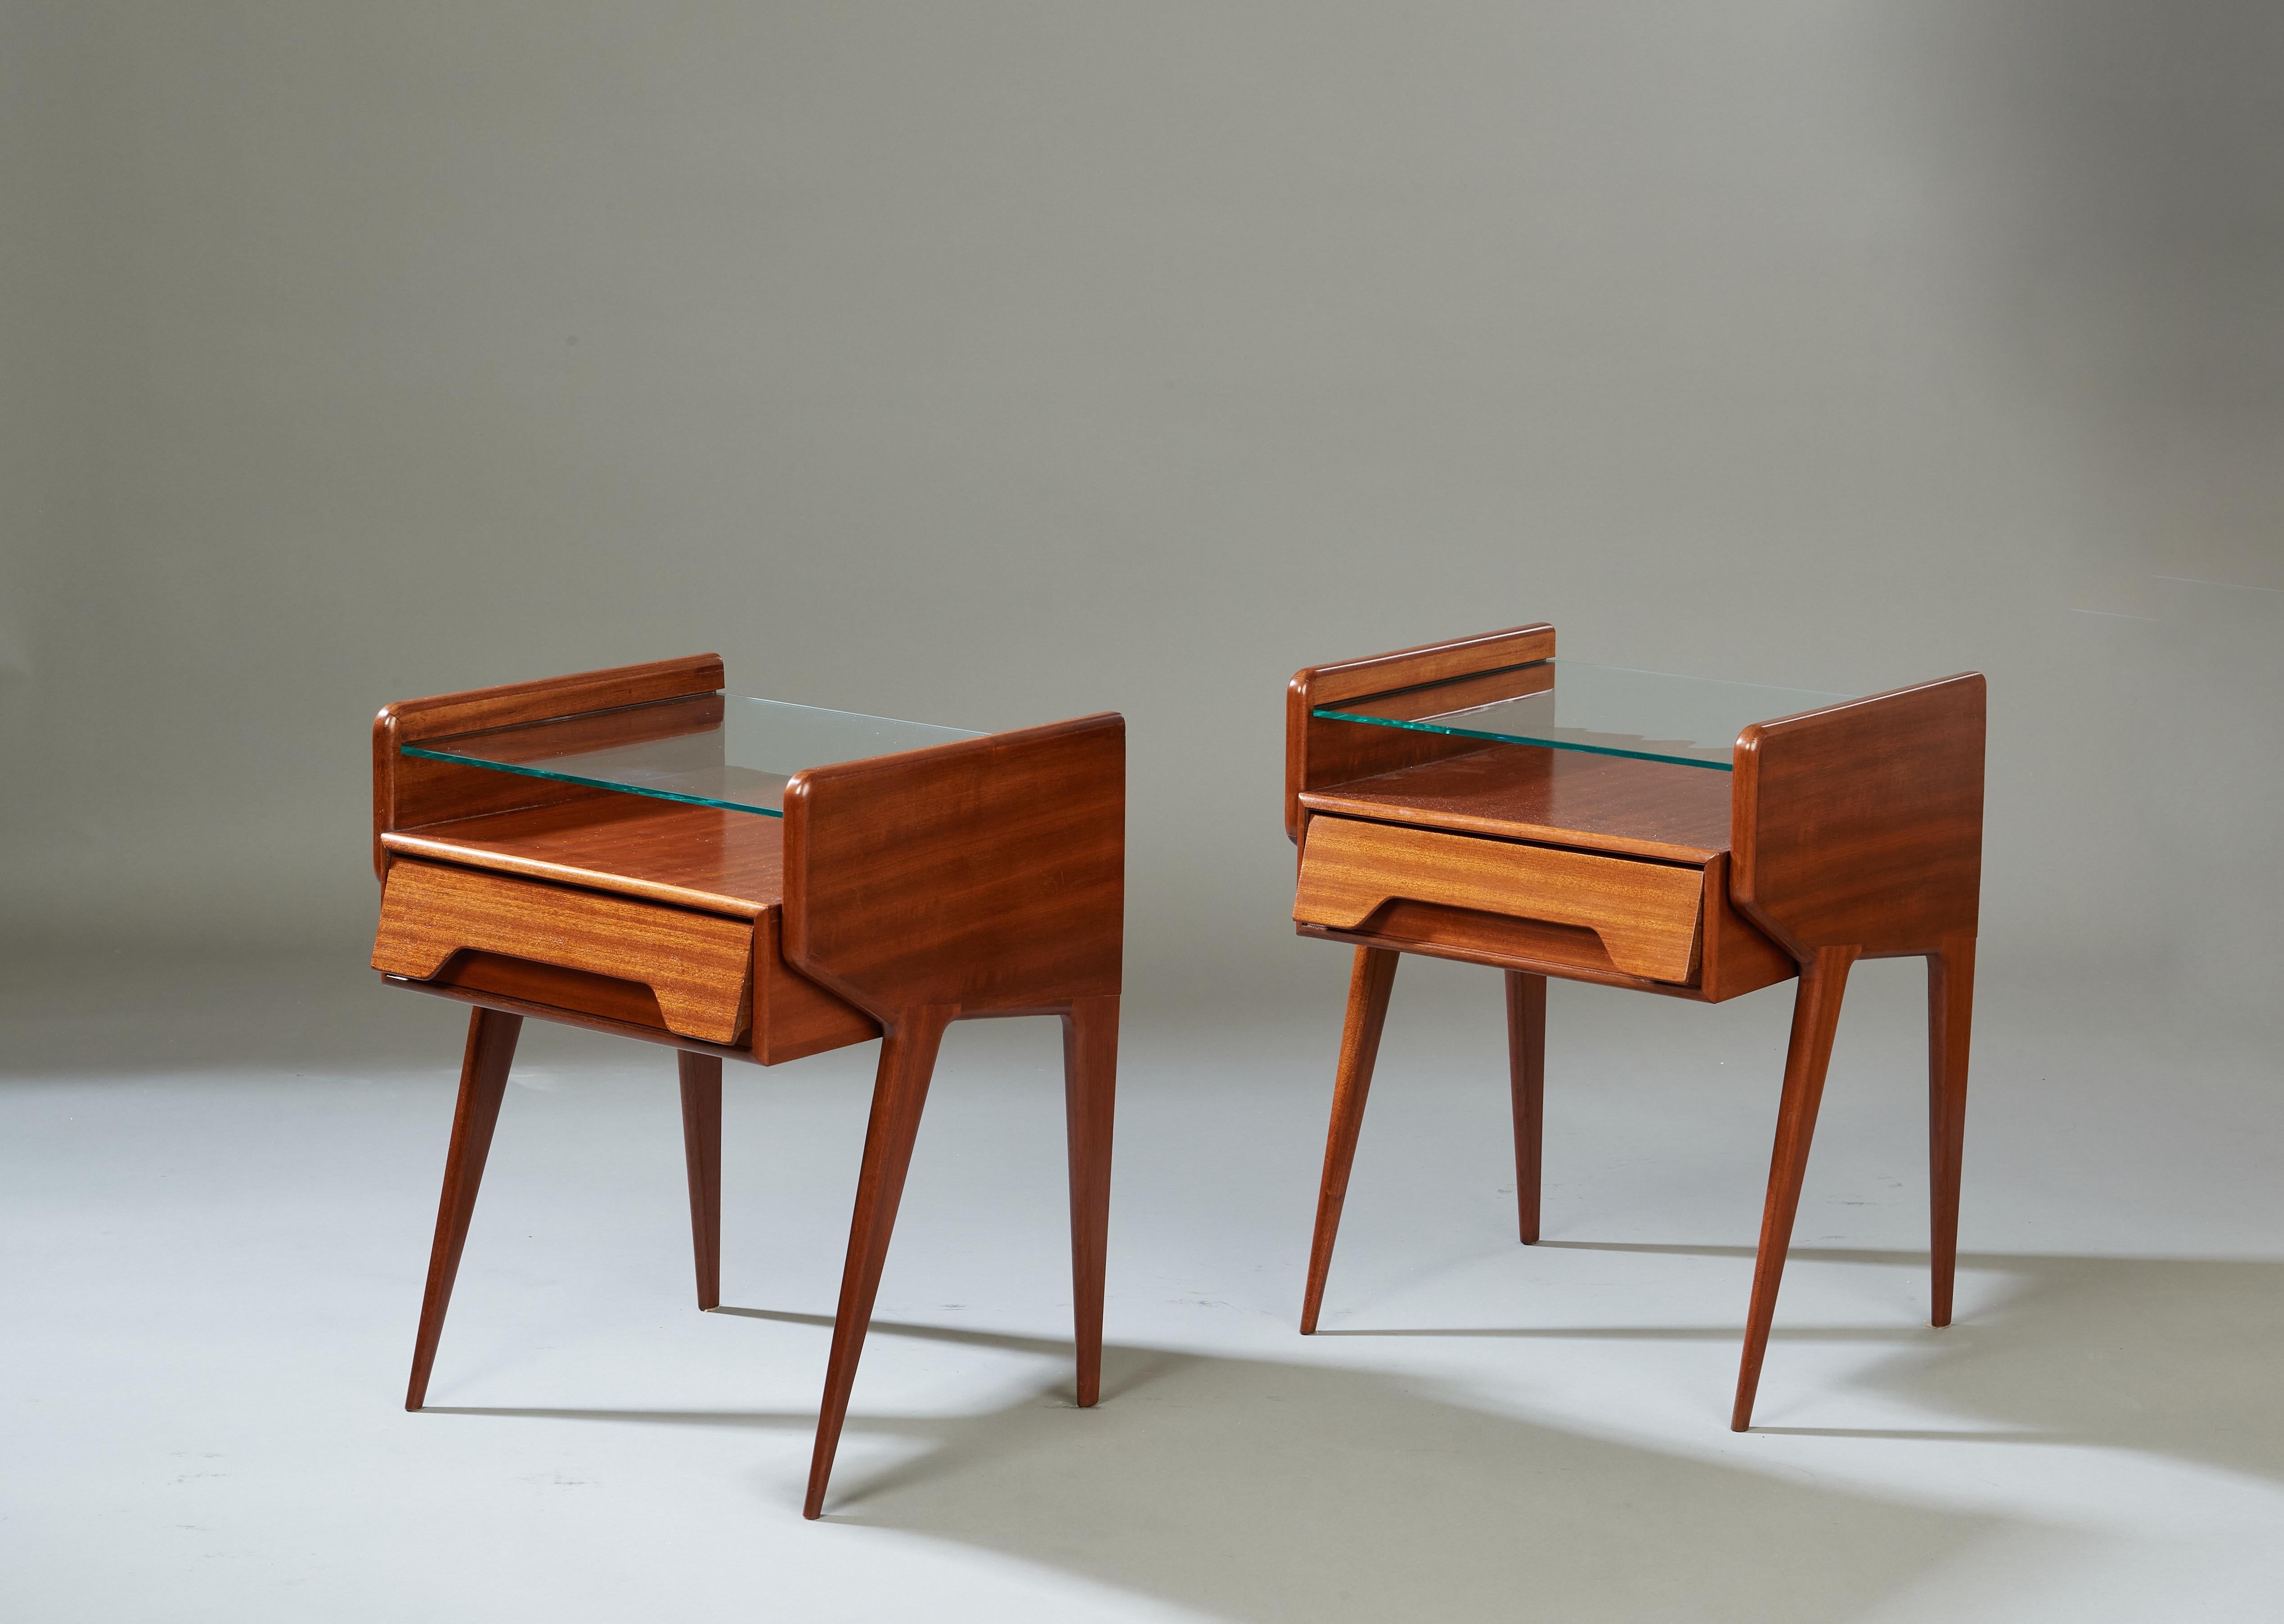 Italie, années 1950 

Une paire dynamique de tables de chevet modernistes à la manière d'Ico Parisi, en acajou poli avec un grain vibrant d'œil de tigre. Un corps fluide et ailé aux bords arrondis soutient une étagère en verre flottante et un tiroir